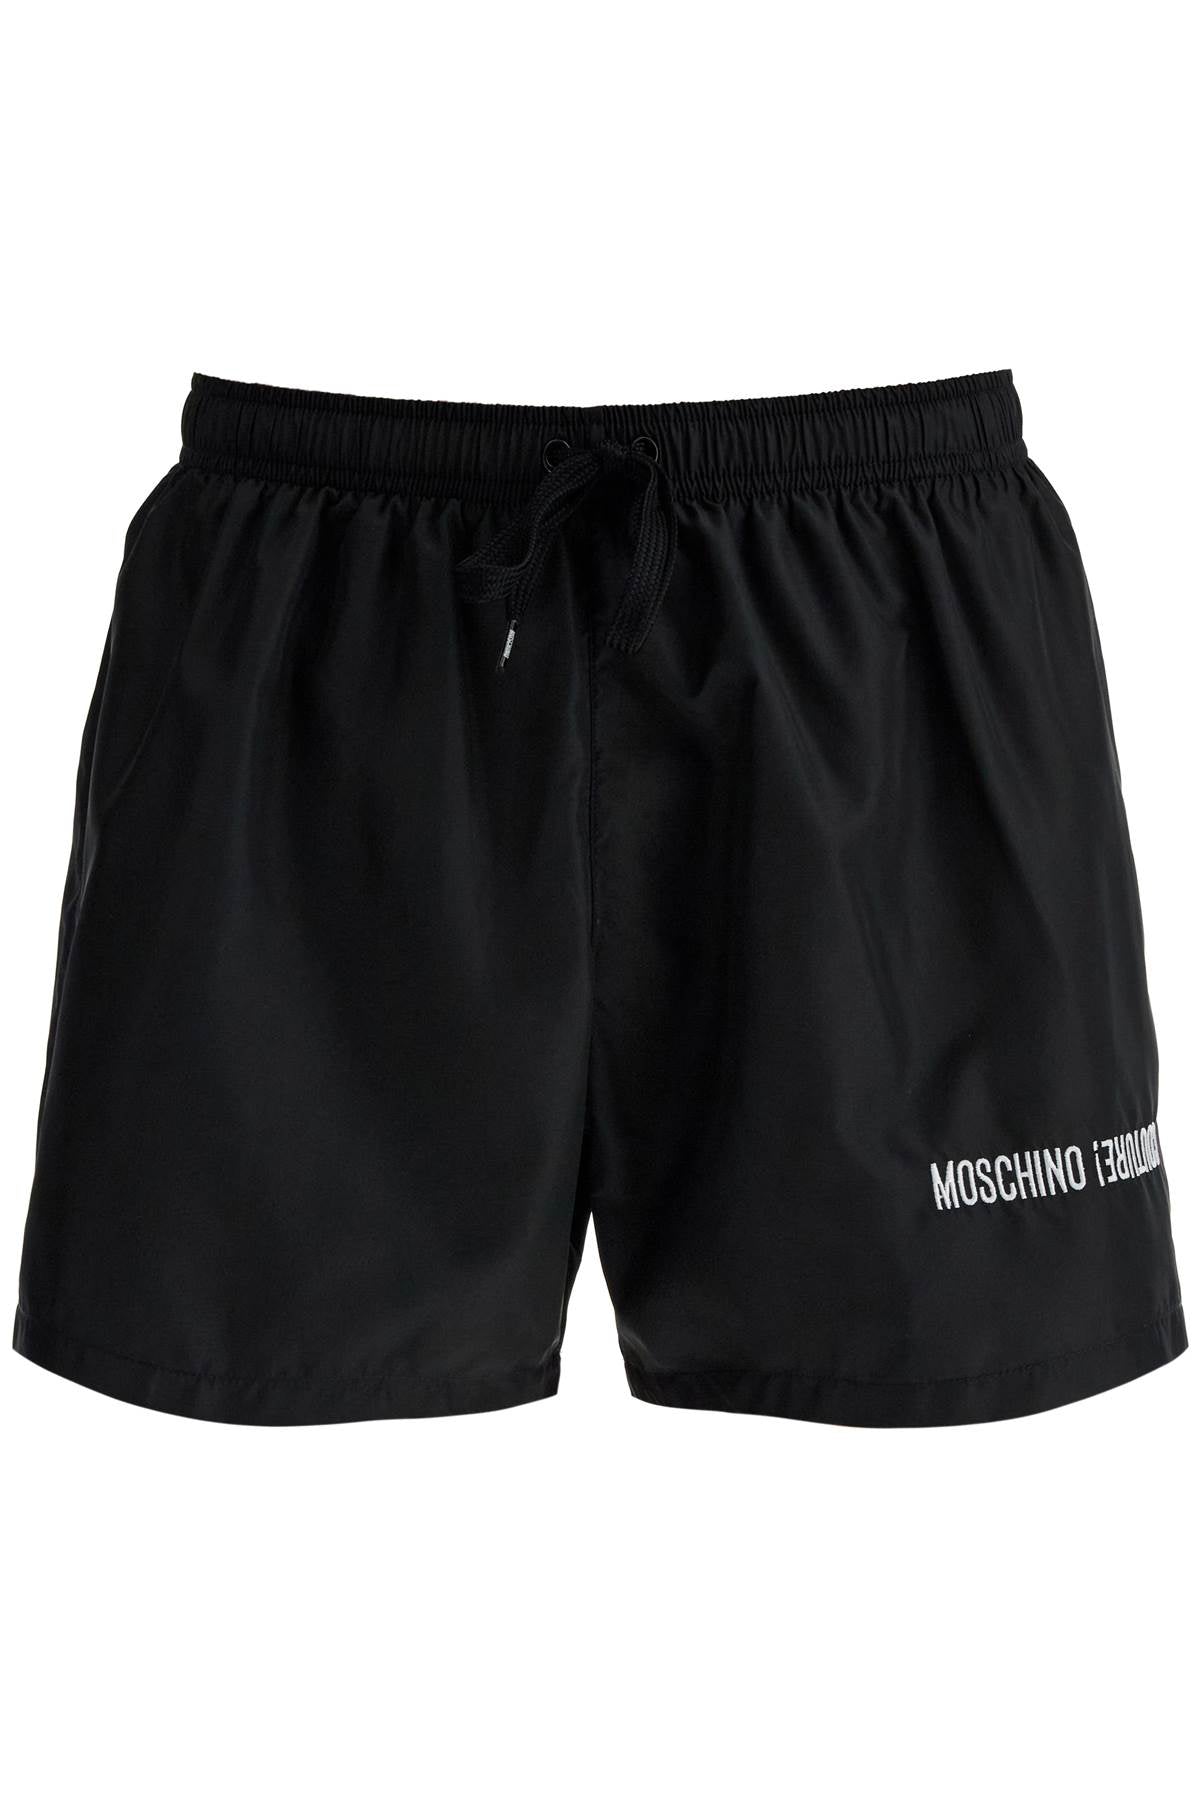 embroidered sea boxer shorts A4202 7075 MULTI BLACK